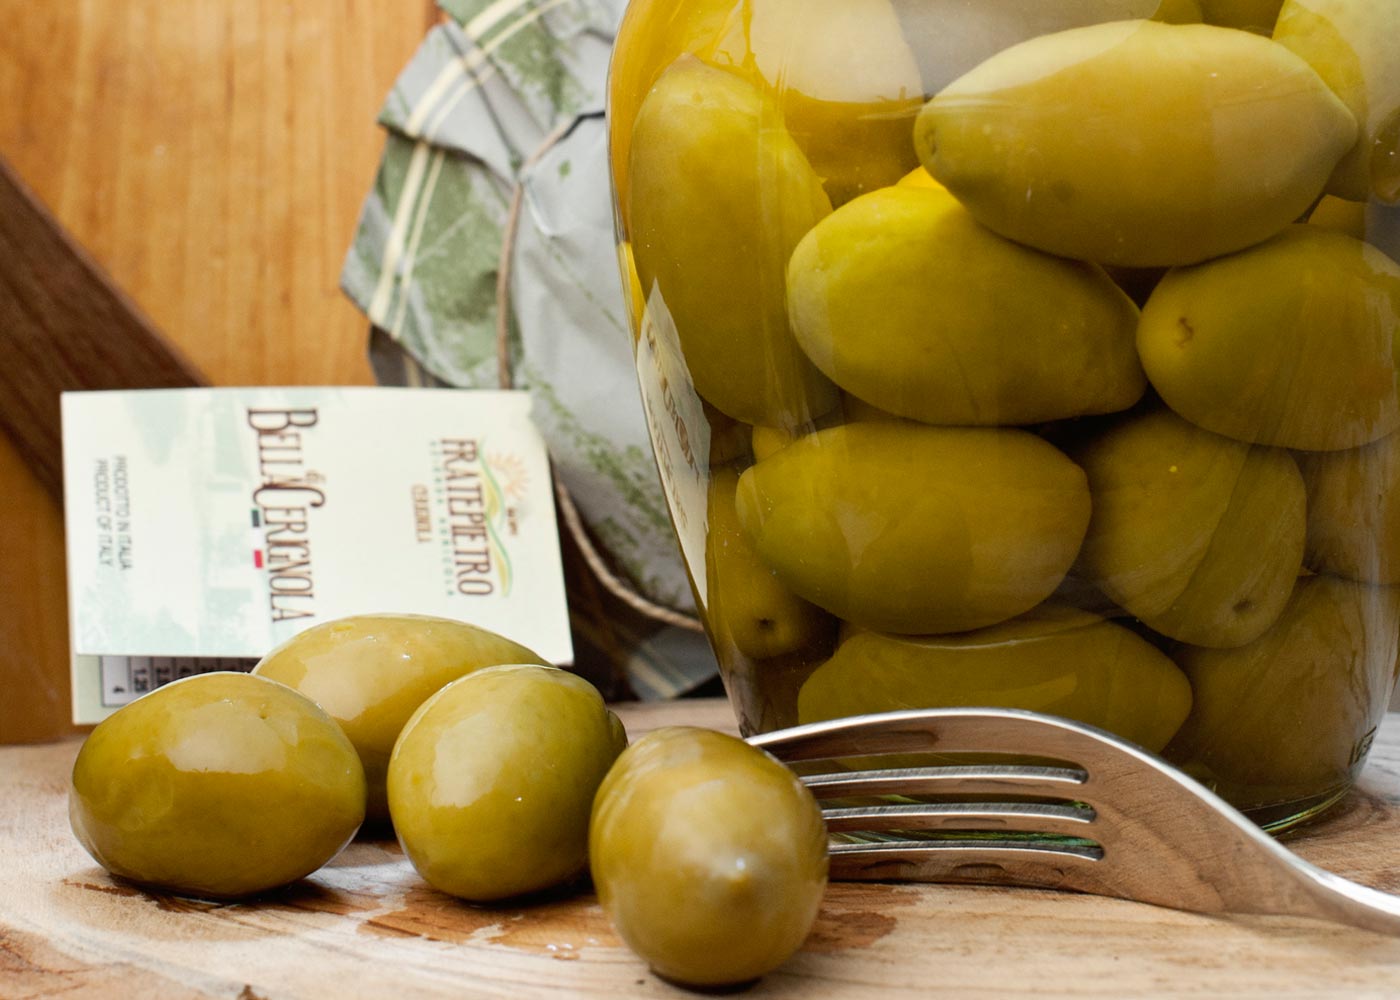 La Bella di Cerignola: Olive Verdi e Nere in salamoia - Sapori News 